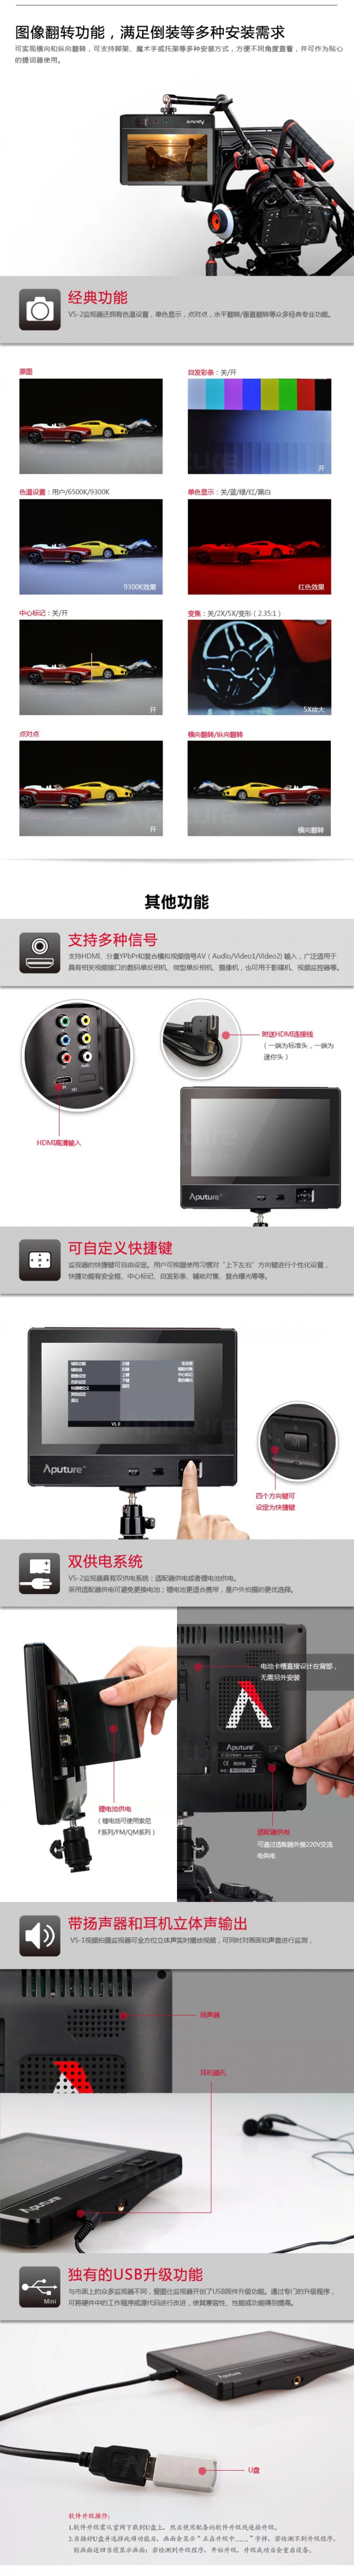 【闪购预告】爱图仕VS-2 7寸IPS高清监视器，闪购立减709元